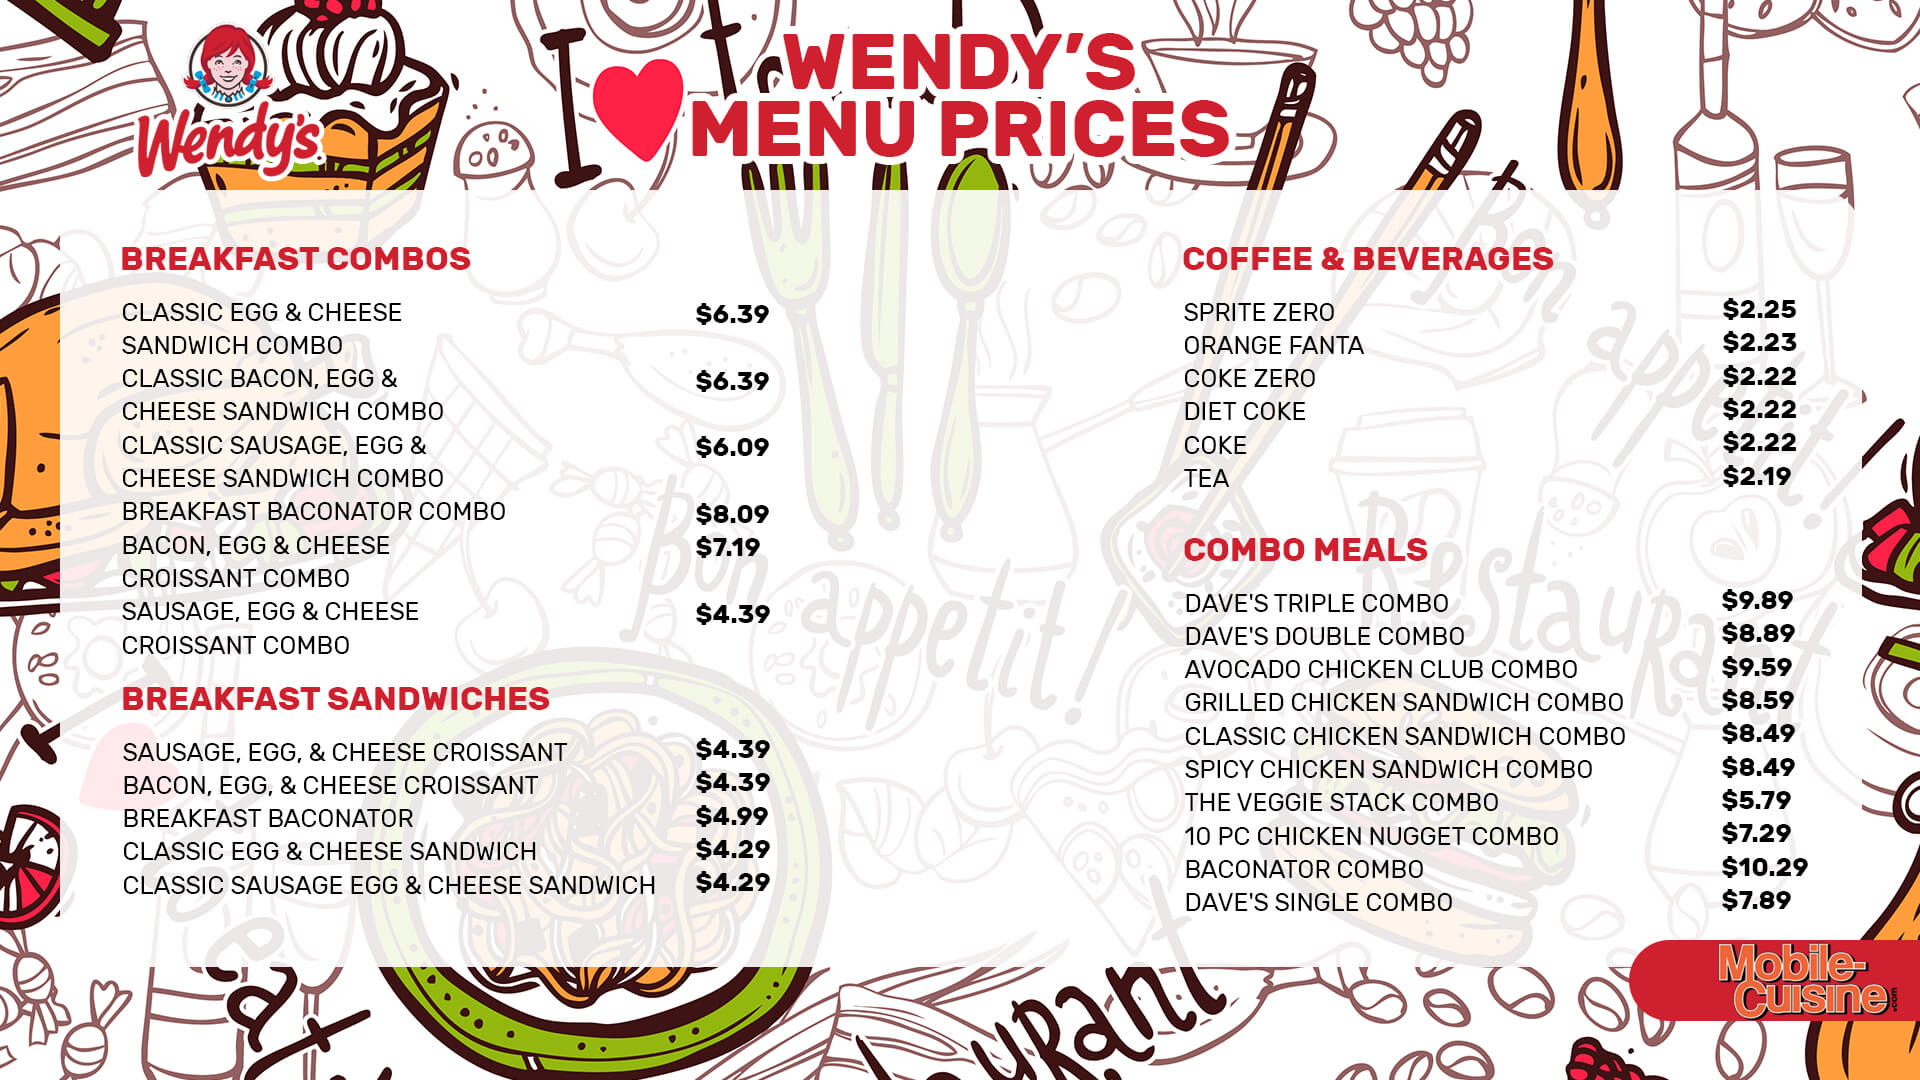 Wendy's menu prices